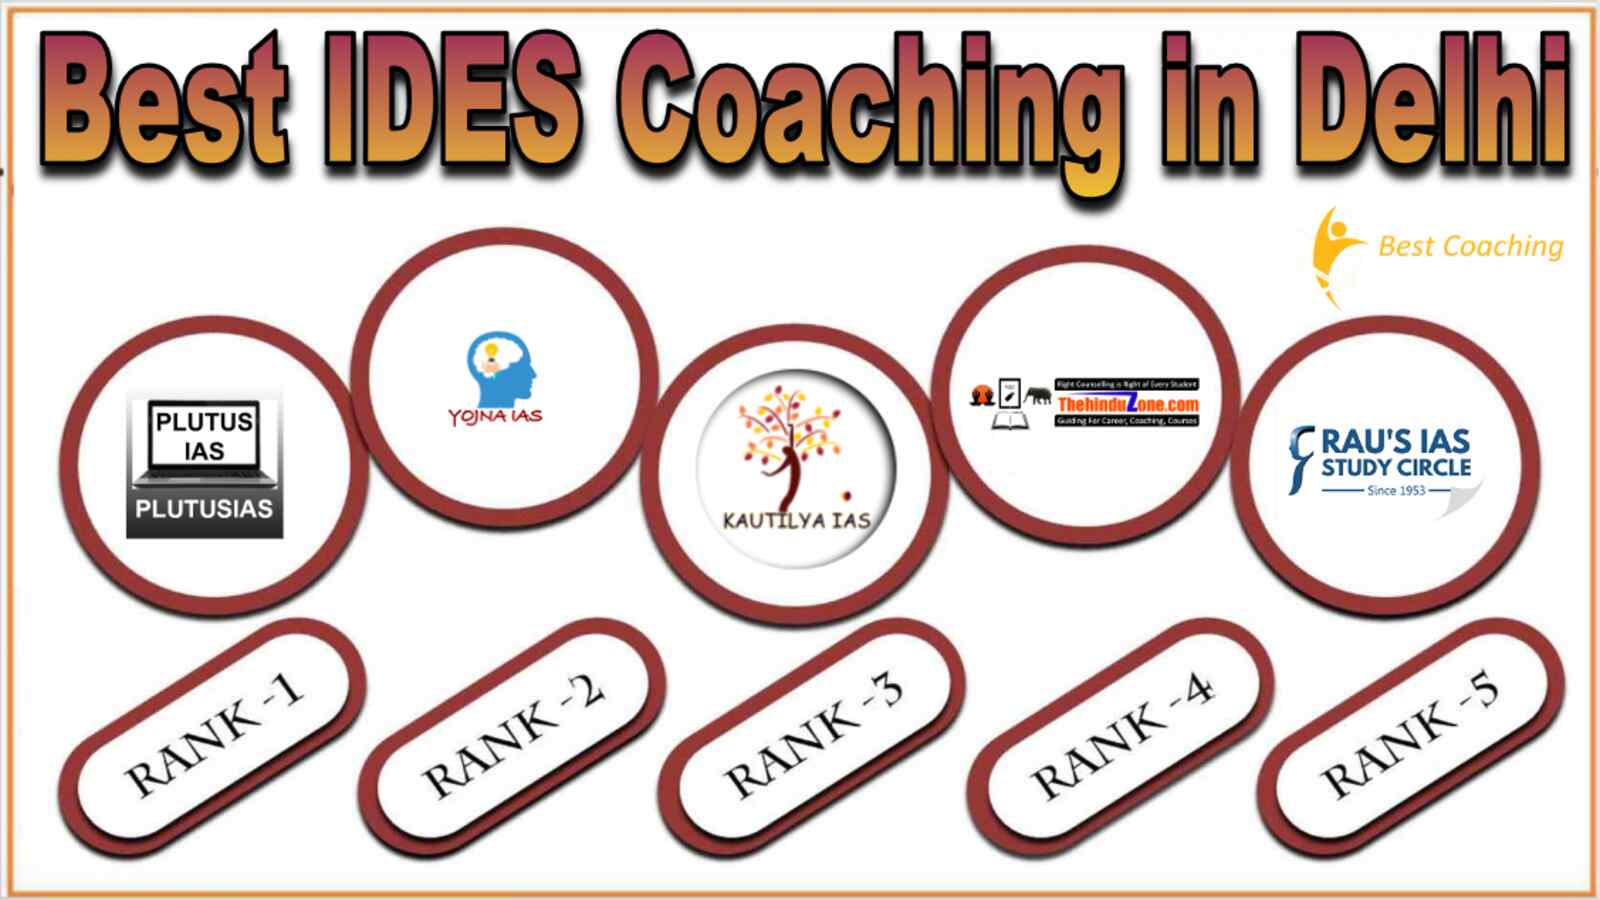 Best IDES Coaching in Delhi